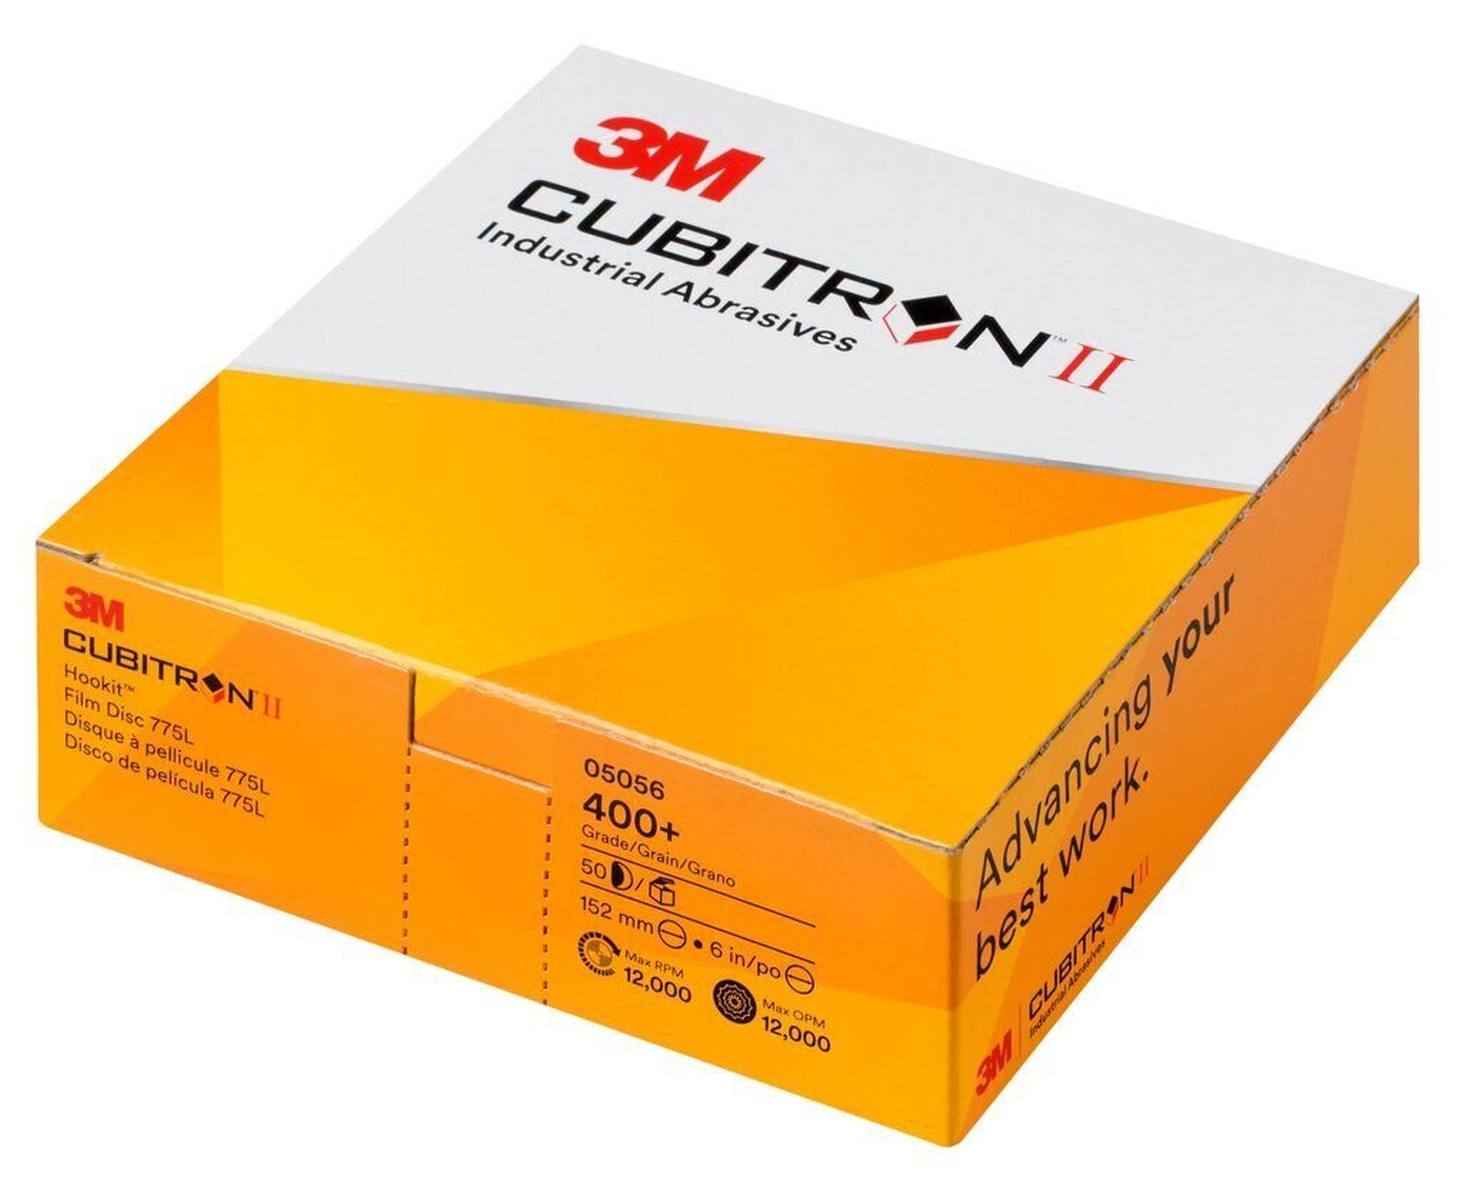 3M Cubitron II Hookit Filmscheibe 775L, 150 mm, 400+, multihole #05059